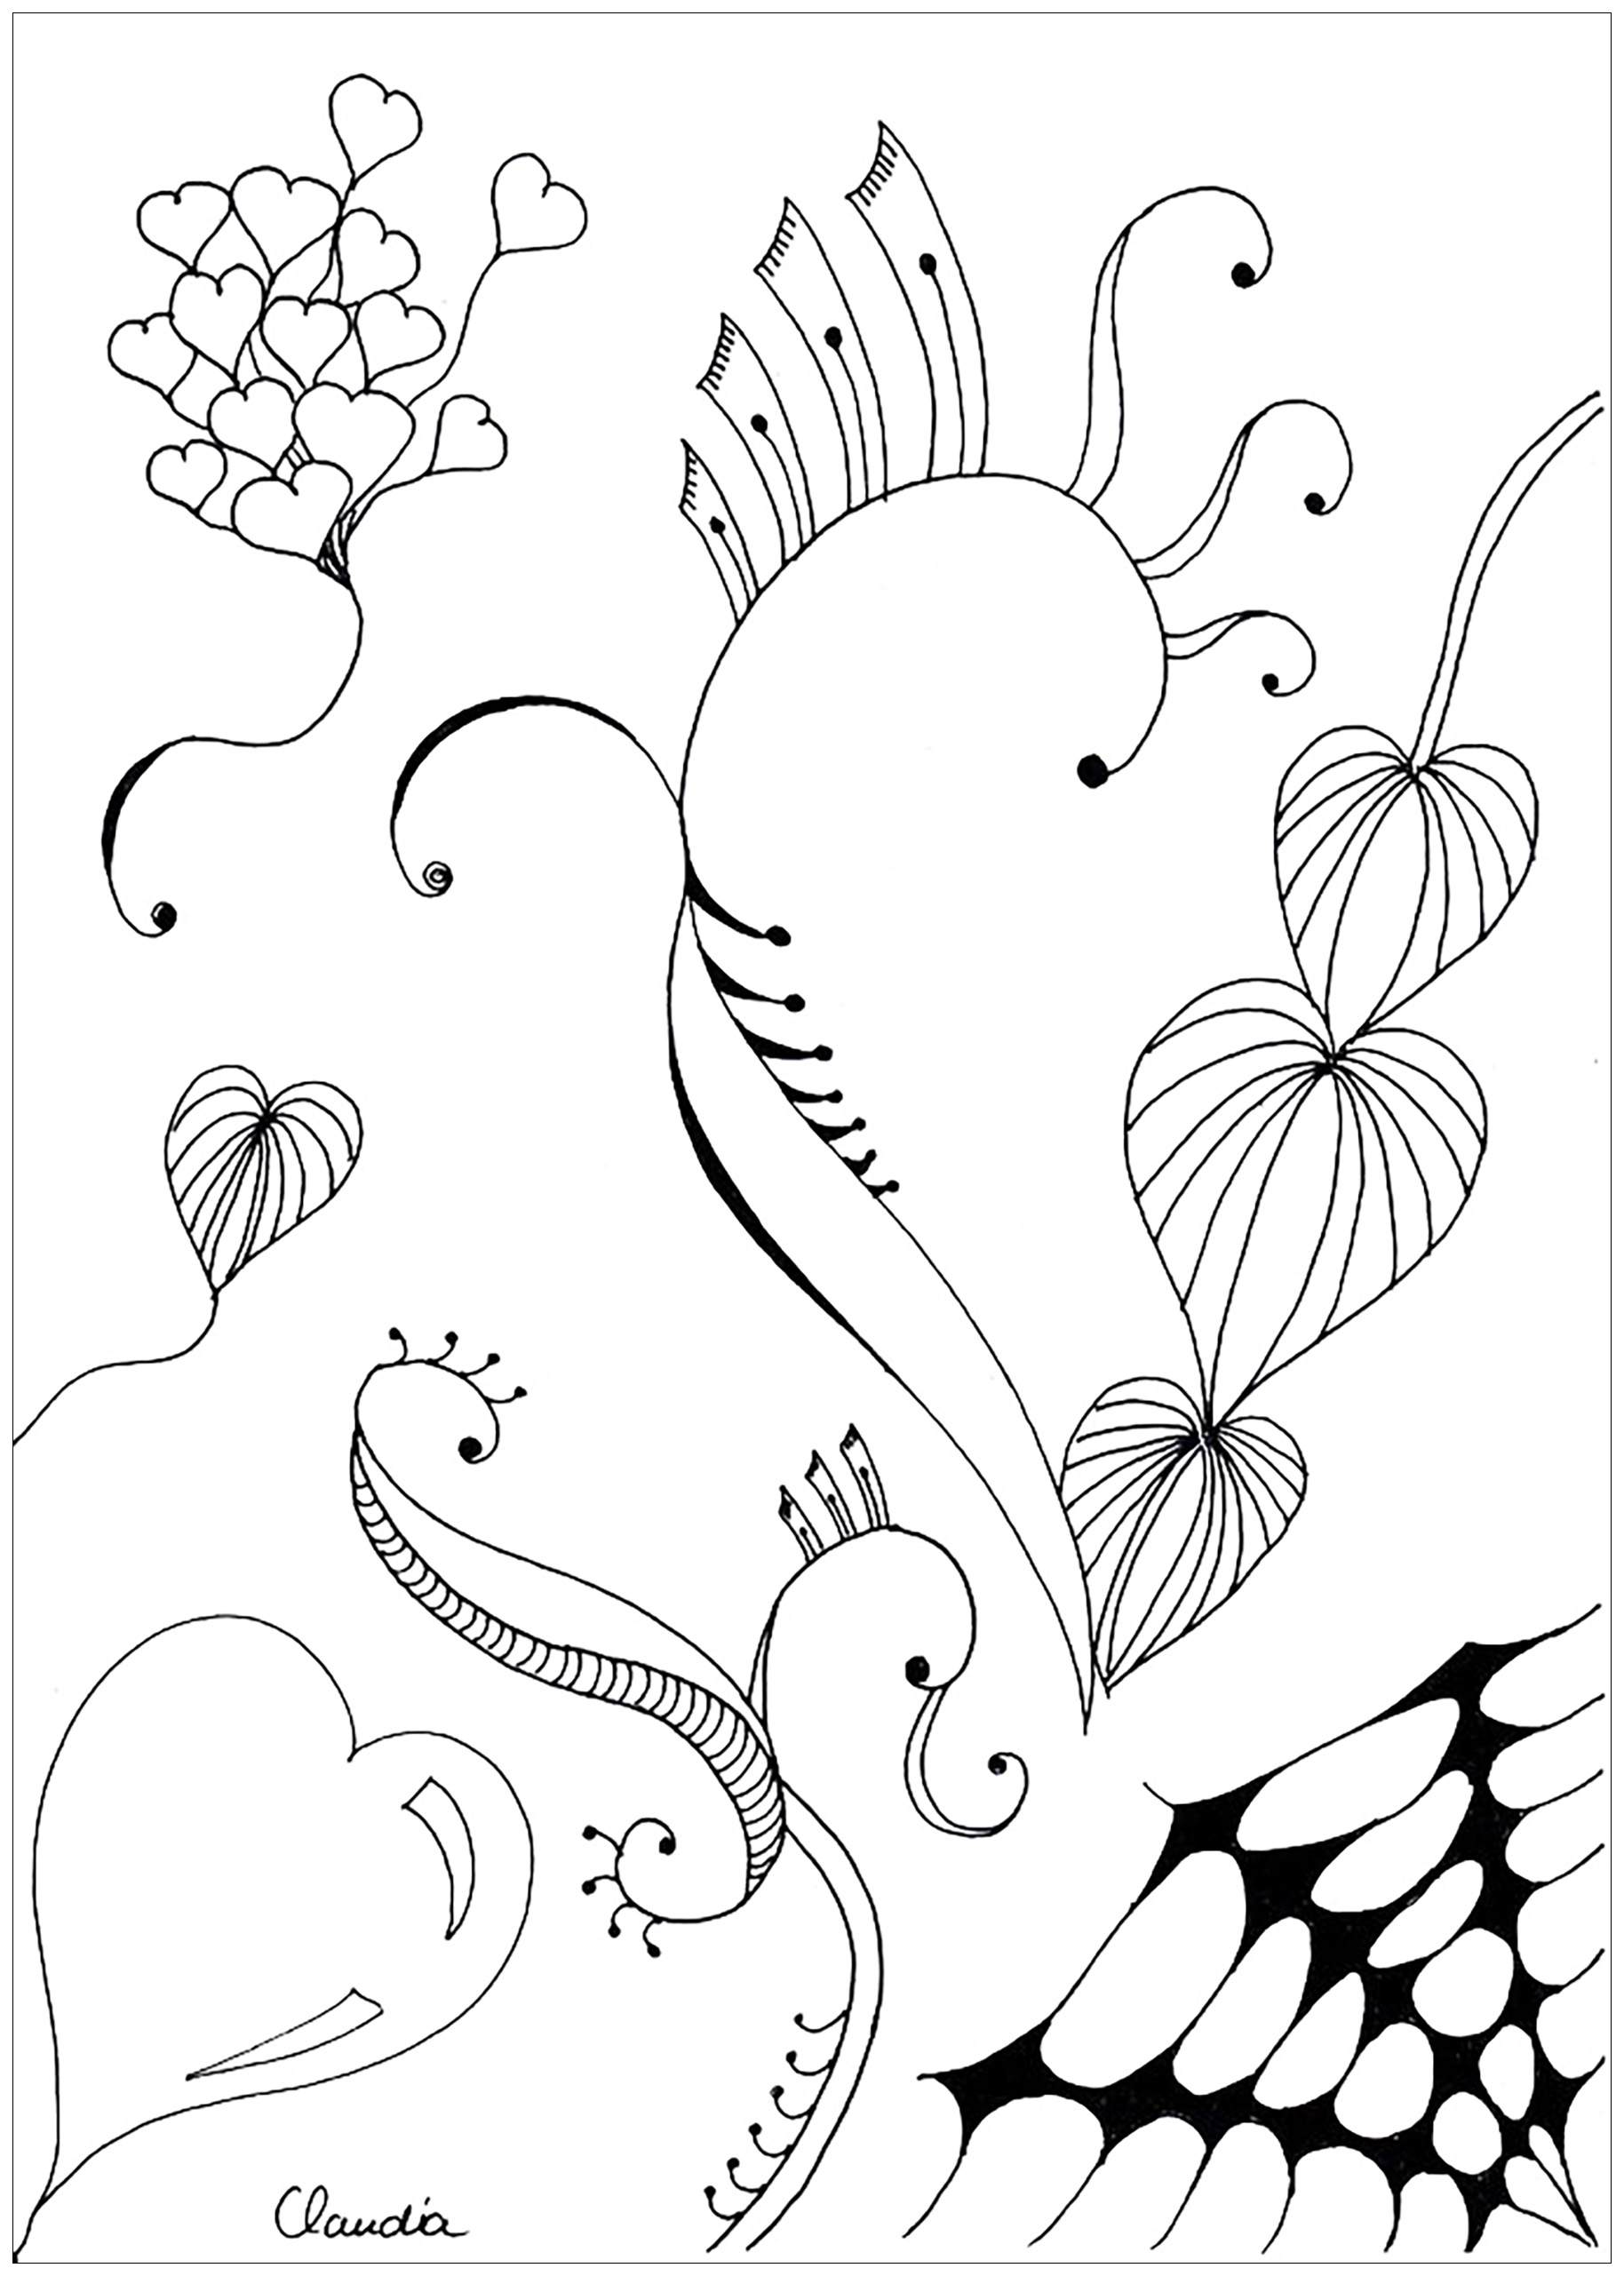 Disegni da colorare per adulti : Zentangle - 44, Artista : Claudia